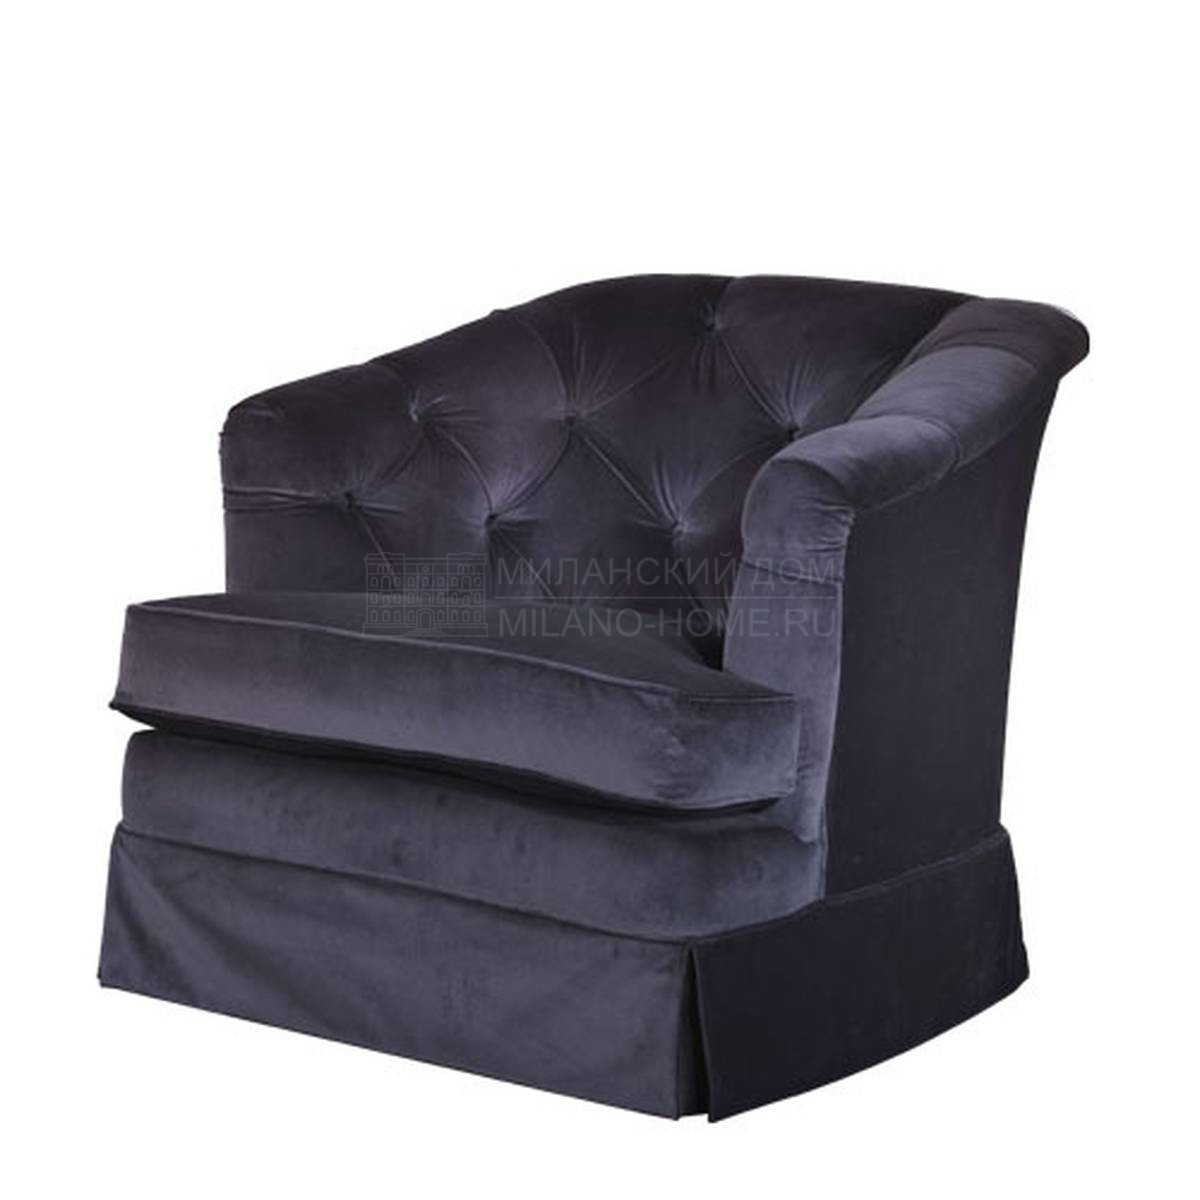 Кресло Berenice/ armchair из Италии фабрики SOFTHOUSE